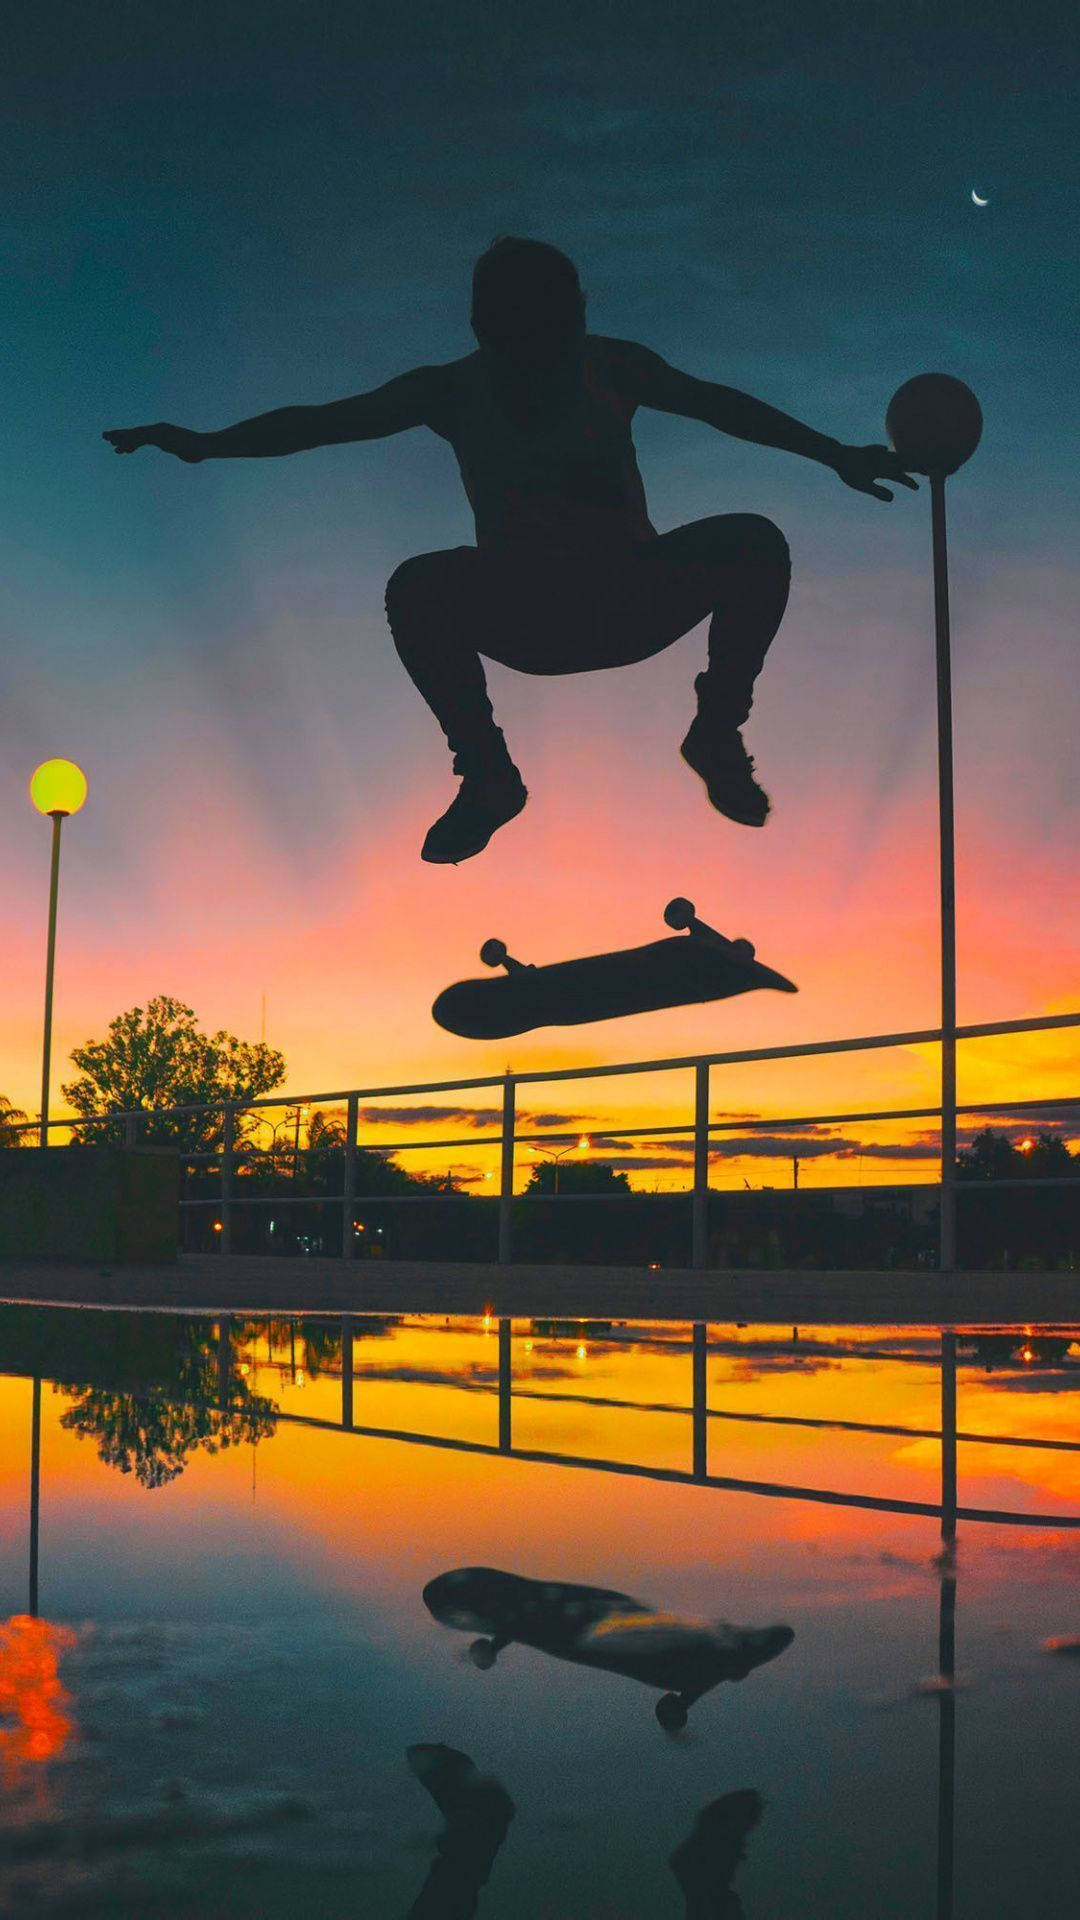 Aesthetic Skateboard Silhouette Man Wallpaper